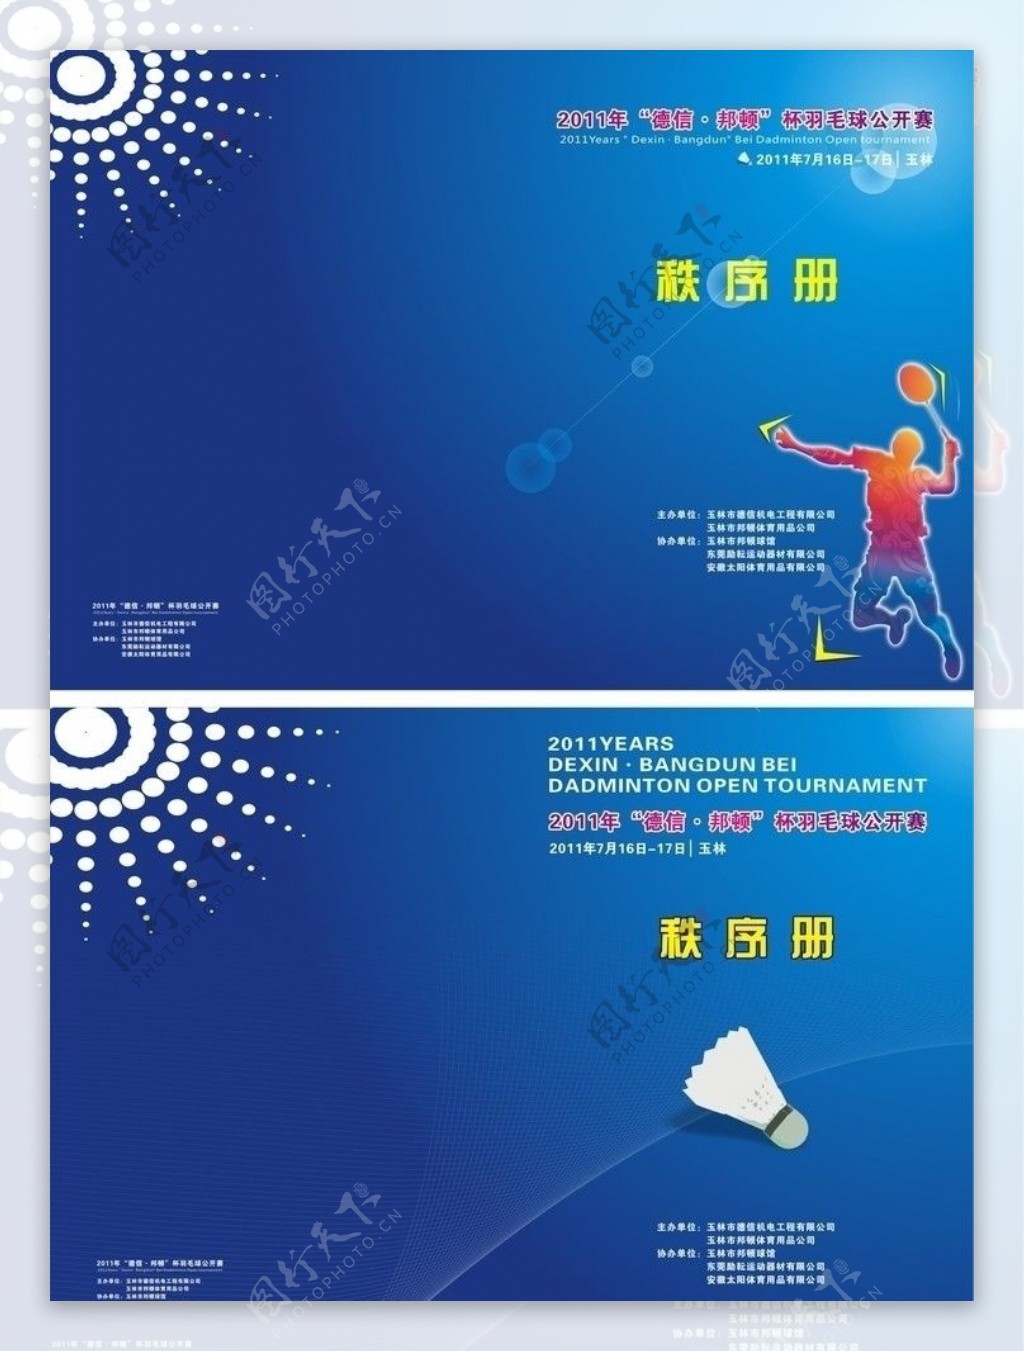 羽毛球赛封面图片